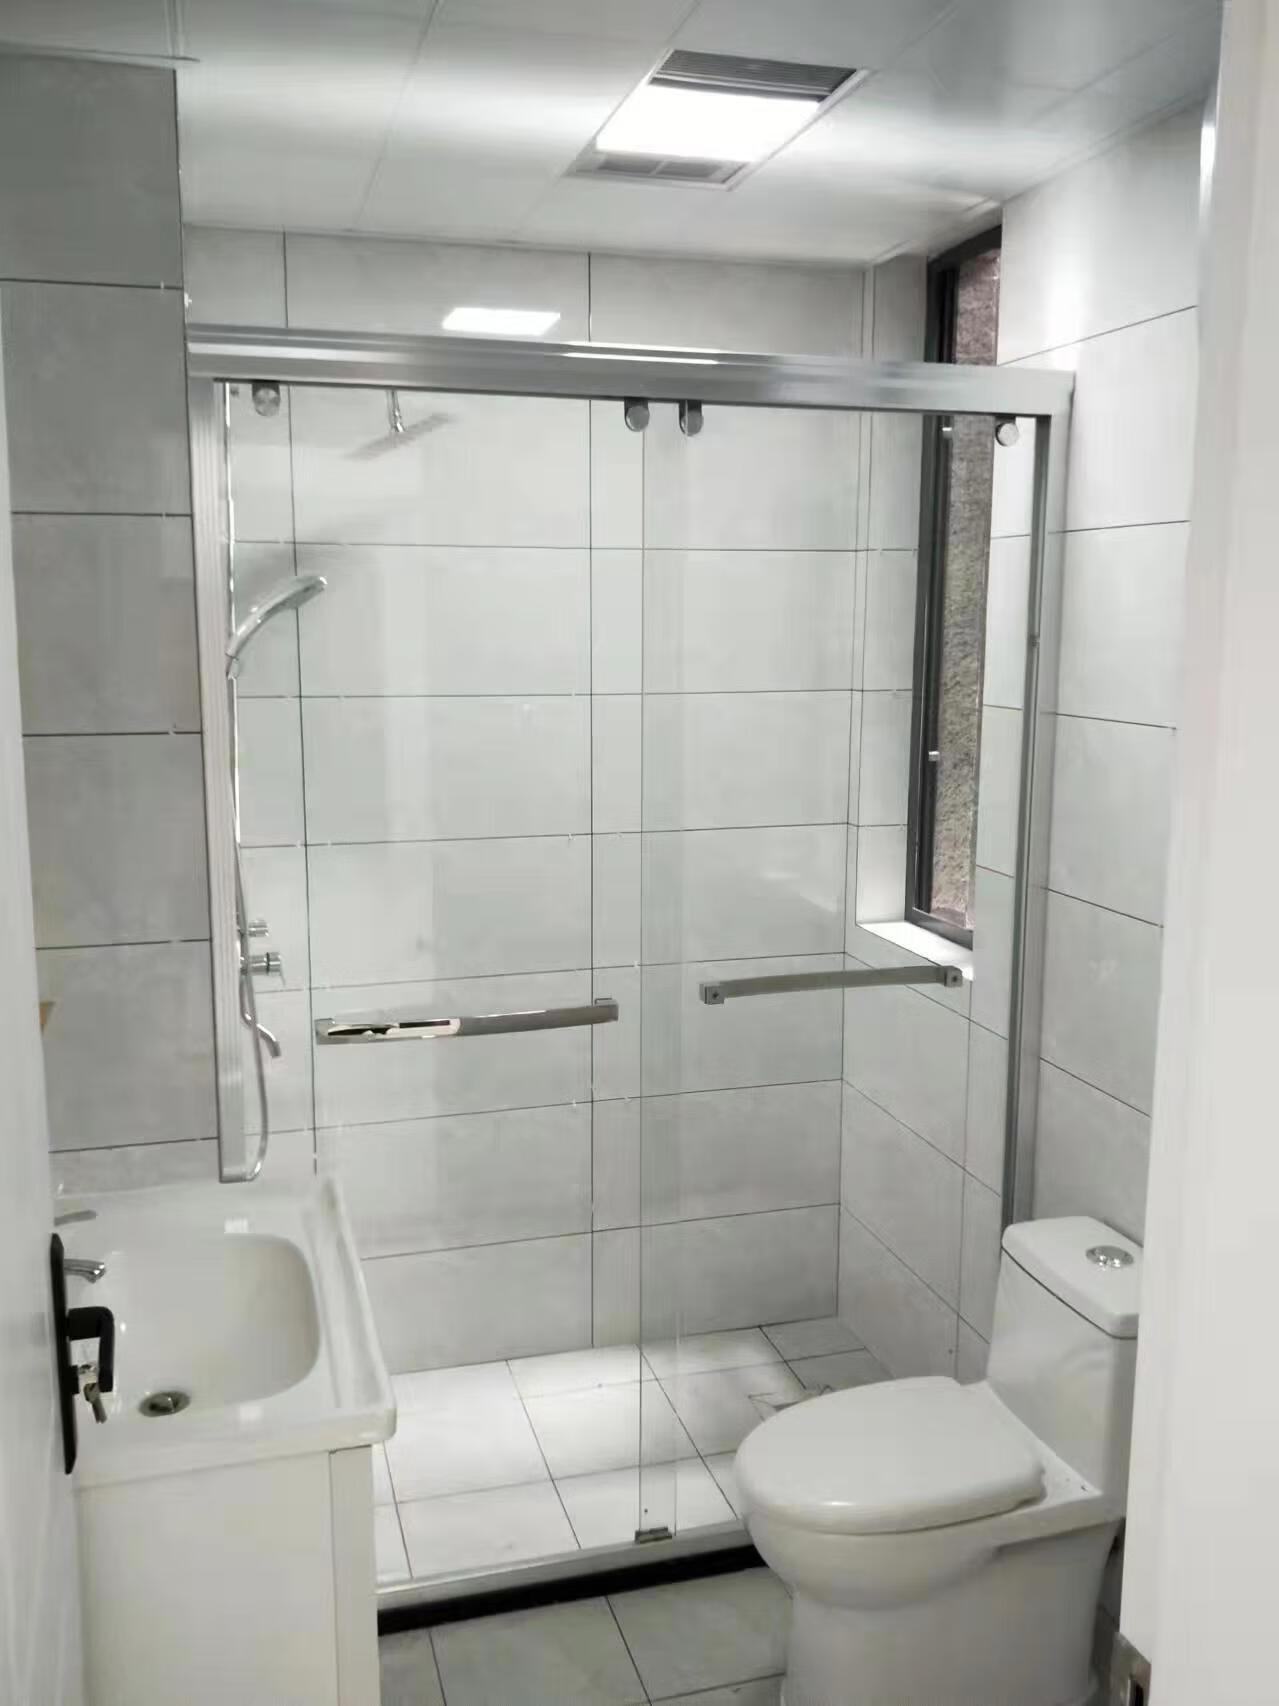 橙央卫生间一字型淋浴房浴室玻璃门隔断洗澡间干湿分离隔断推拉门移门 铝合金经济款 8mm钢化玻璃